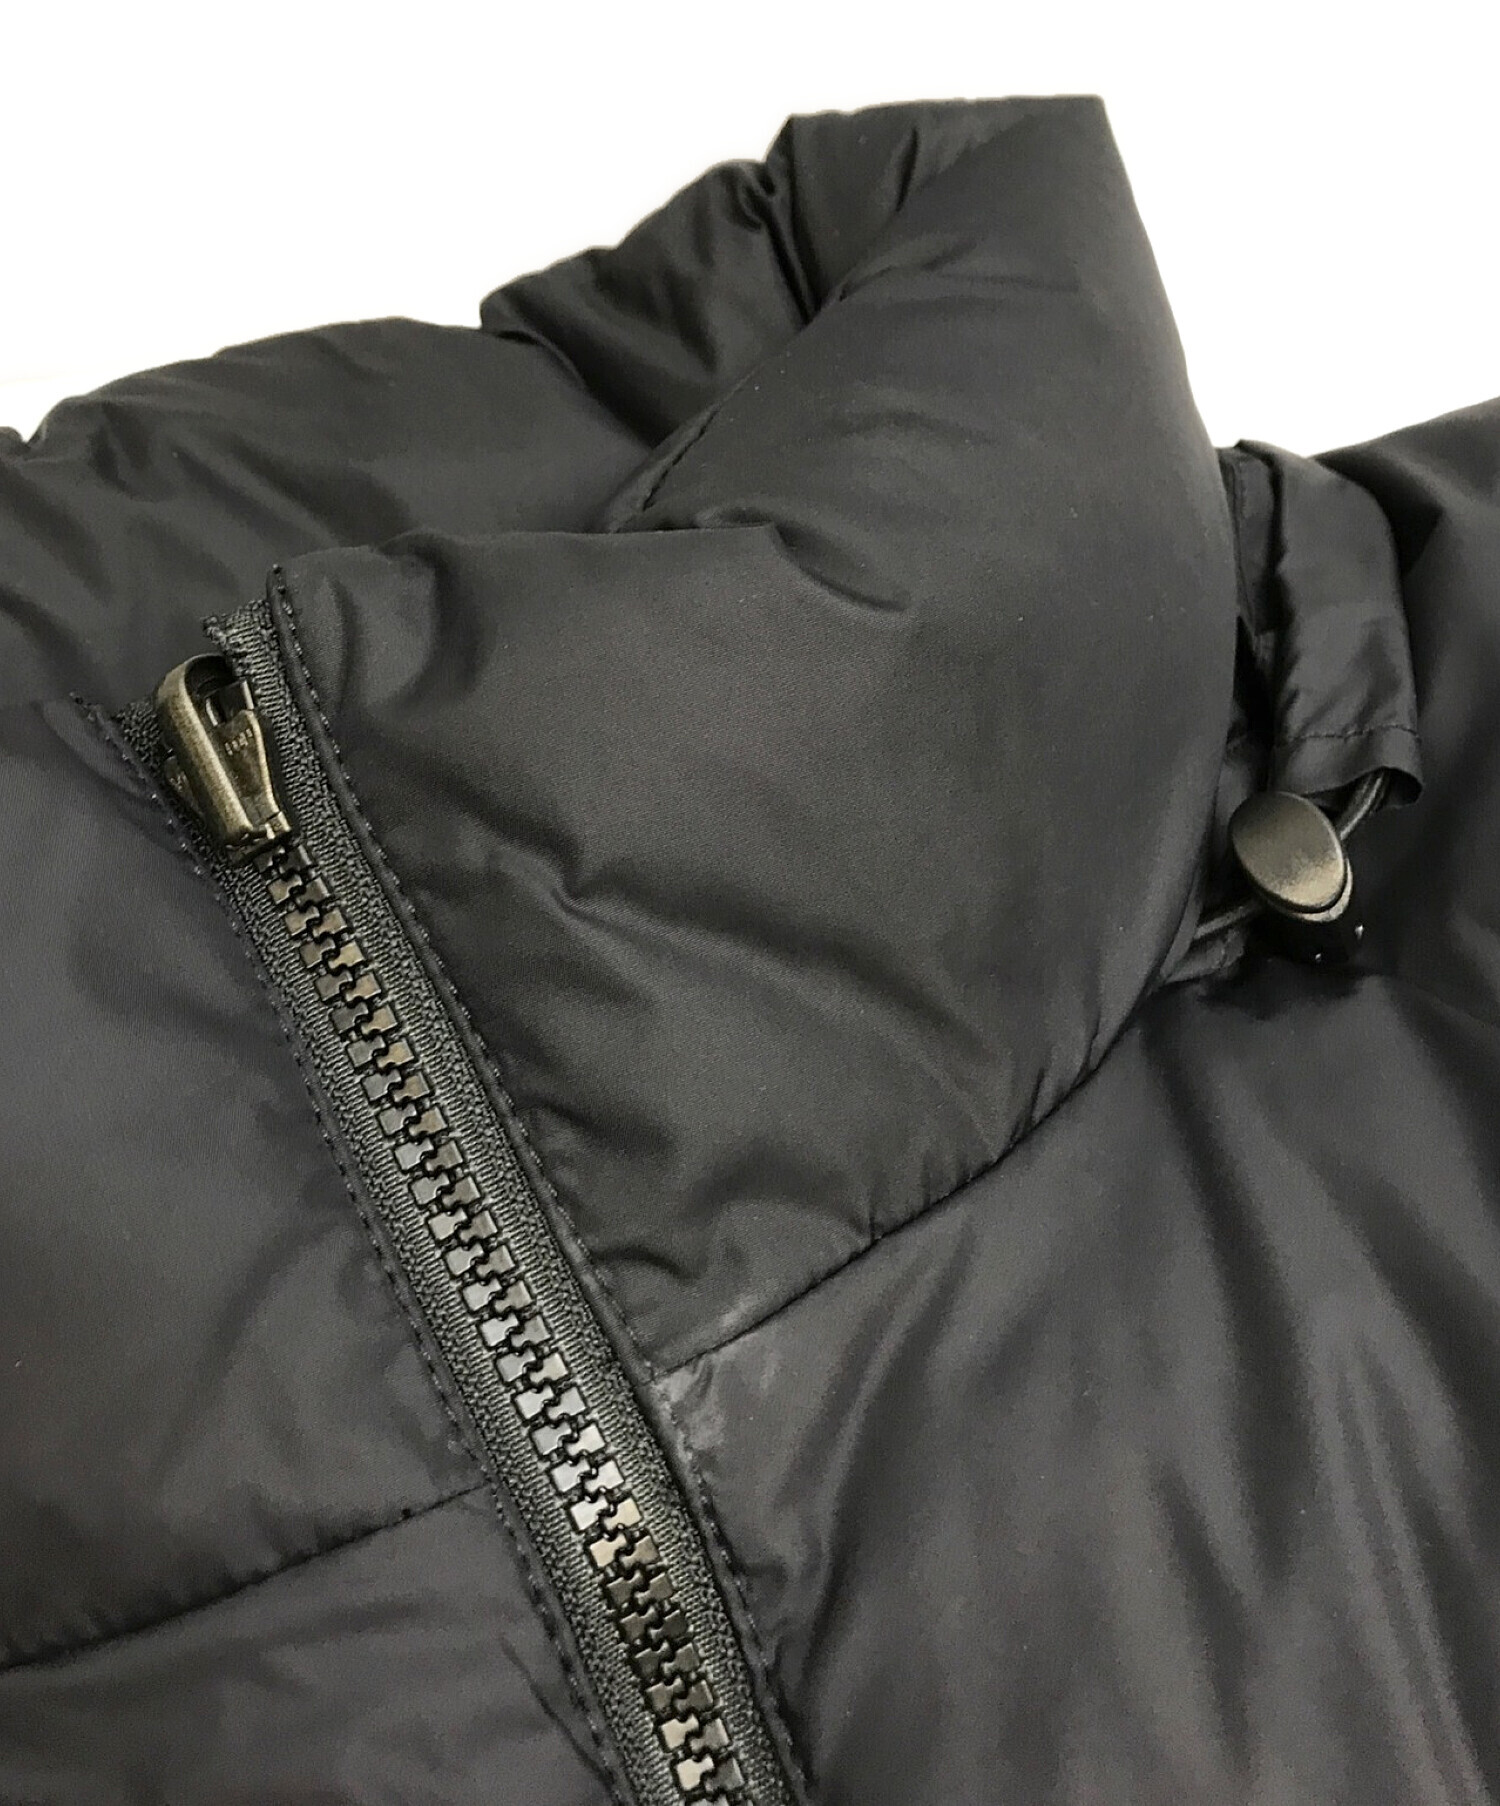 SUPREME×THE NORTH FACE (シュプリーム × ザノースフェイス) 21SS Studded Nuptse Jacket  スタッズヌプシジャケット コラボダウンジャケット ブラック×レッド サイズ:M